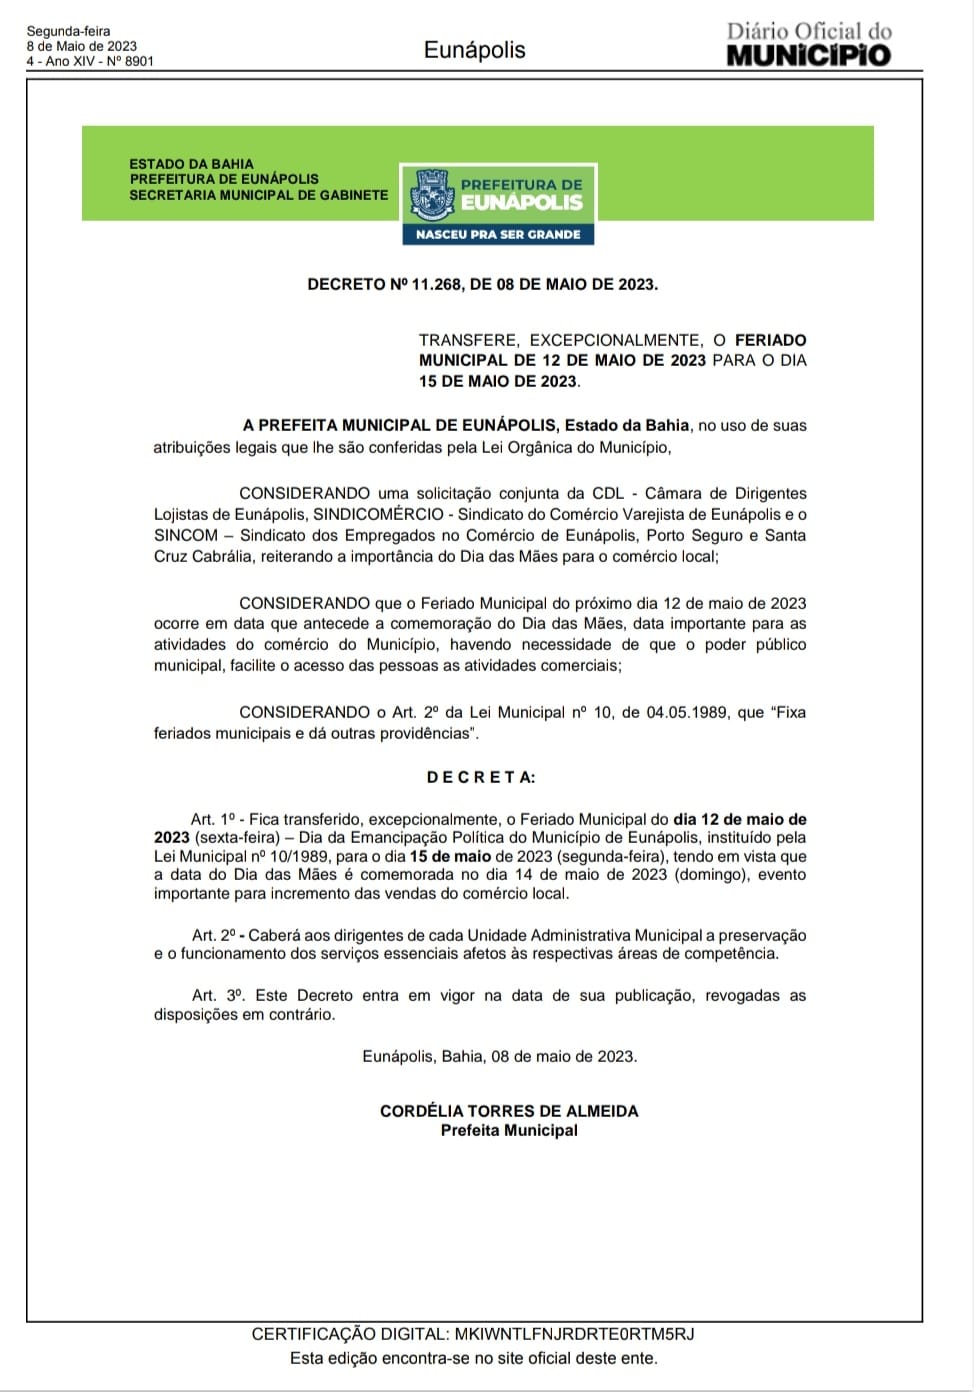 Prefeita Cordélia Torres atende apelo do comércio e transfere o feriado para 15 de maio 27